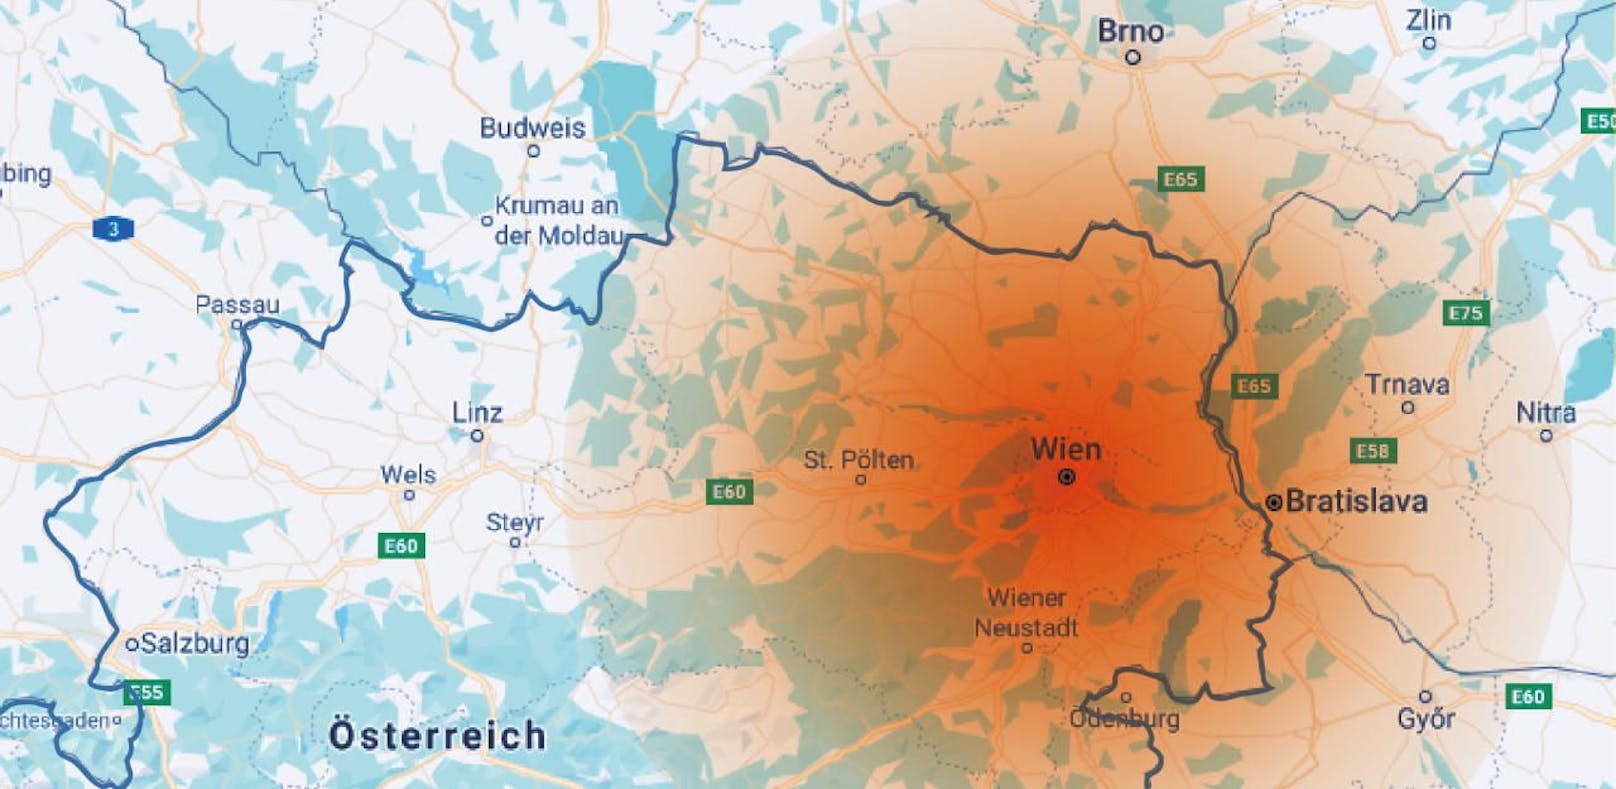 Wie weit würden Wiener für ihren Traumjob fahren? Der rote Fleck in der Graifk markiert die Schmerzgrenze.